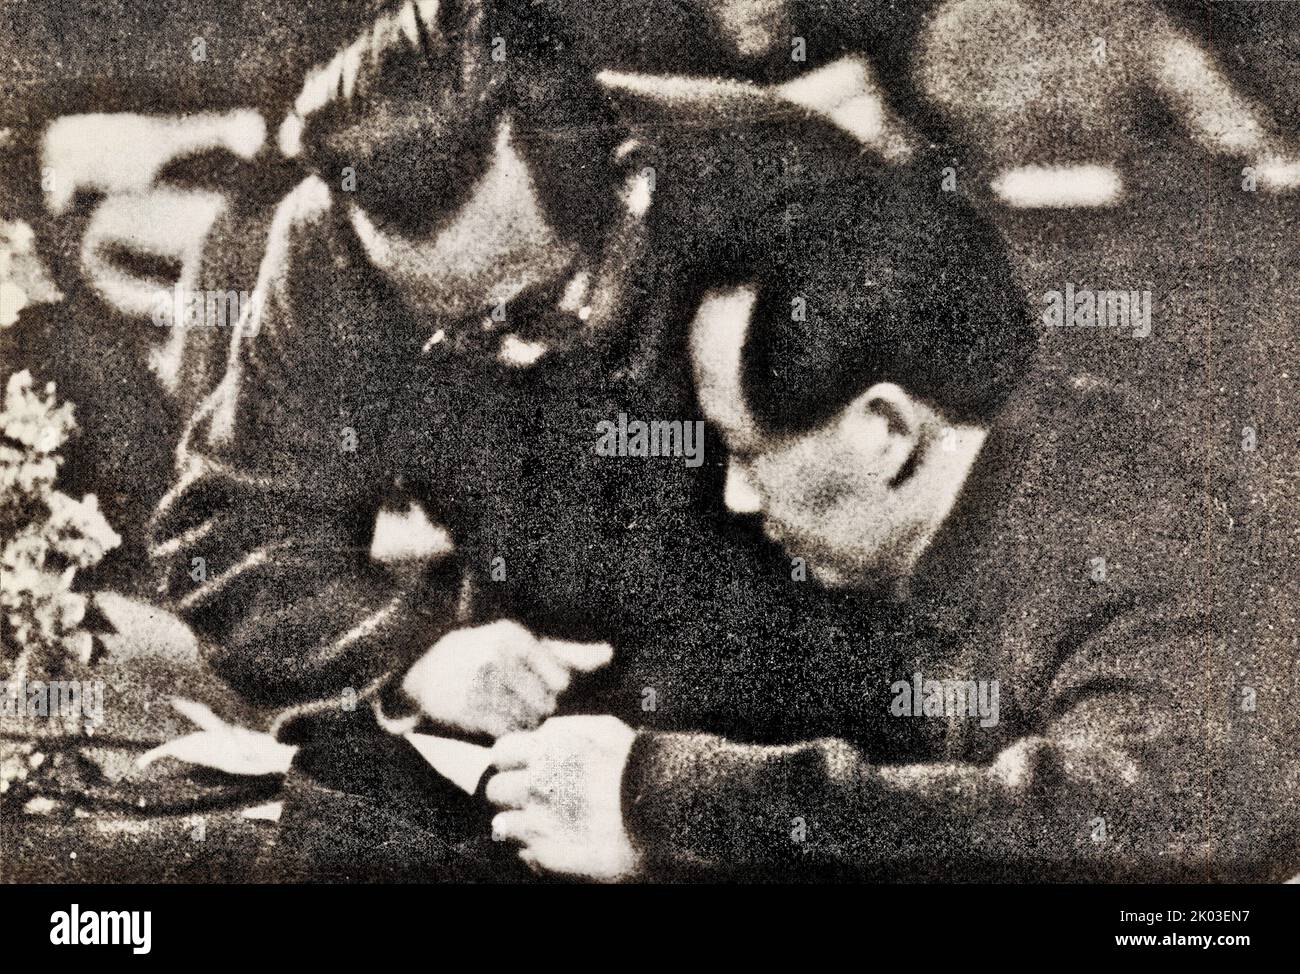 REN Bishi et Mao Zedong ont parlé et travaillé sur le podium du septième Congrès national du Parti communiste de Chine. REN Bishi était un chef militaire et politique au début du Parti communiste chinois. Au début de 1930s, Banque D'Images